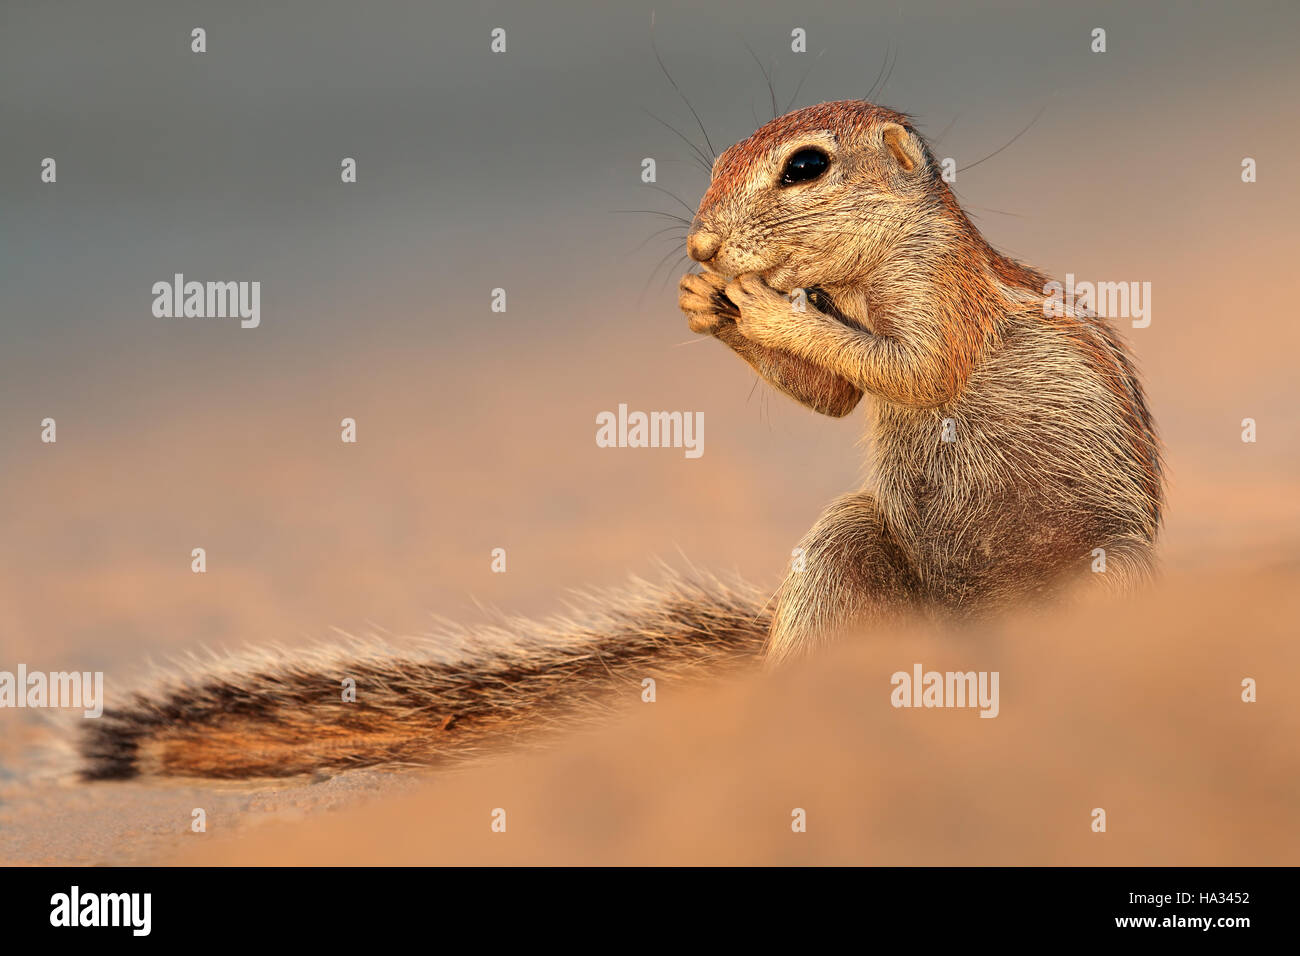 Feeding ground squirrel (Xerus inaurus), Kalahari desert, South Africa Stock Photo